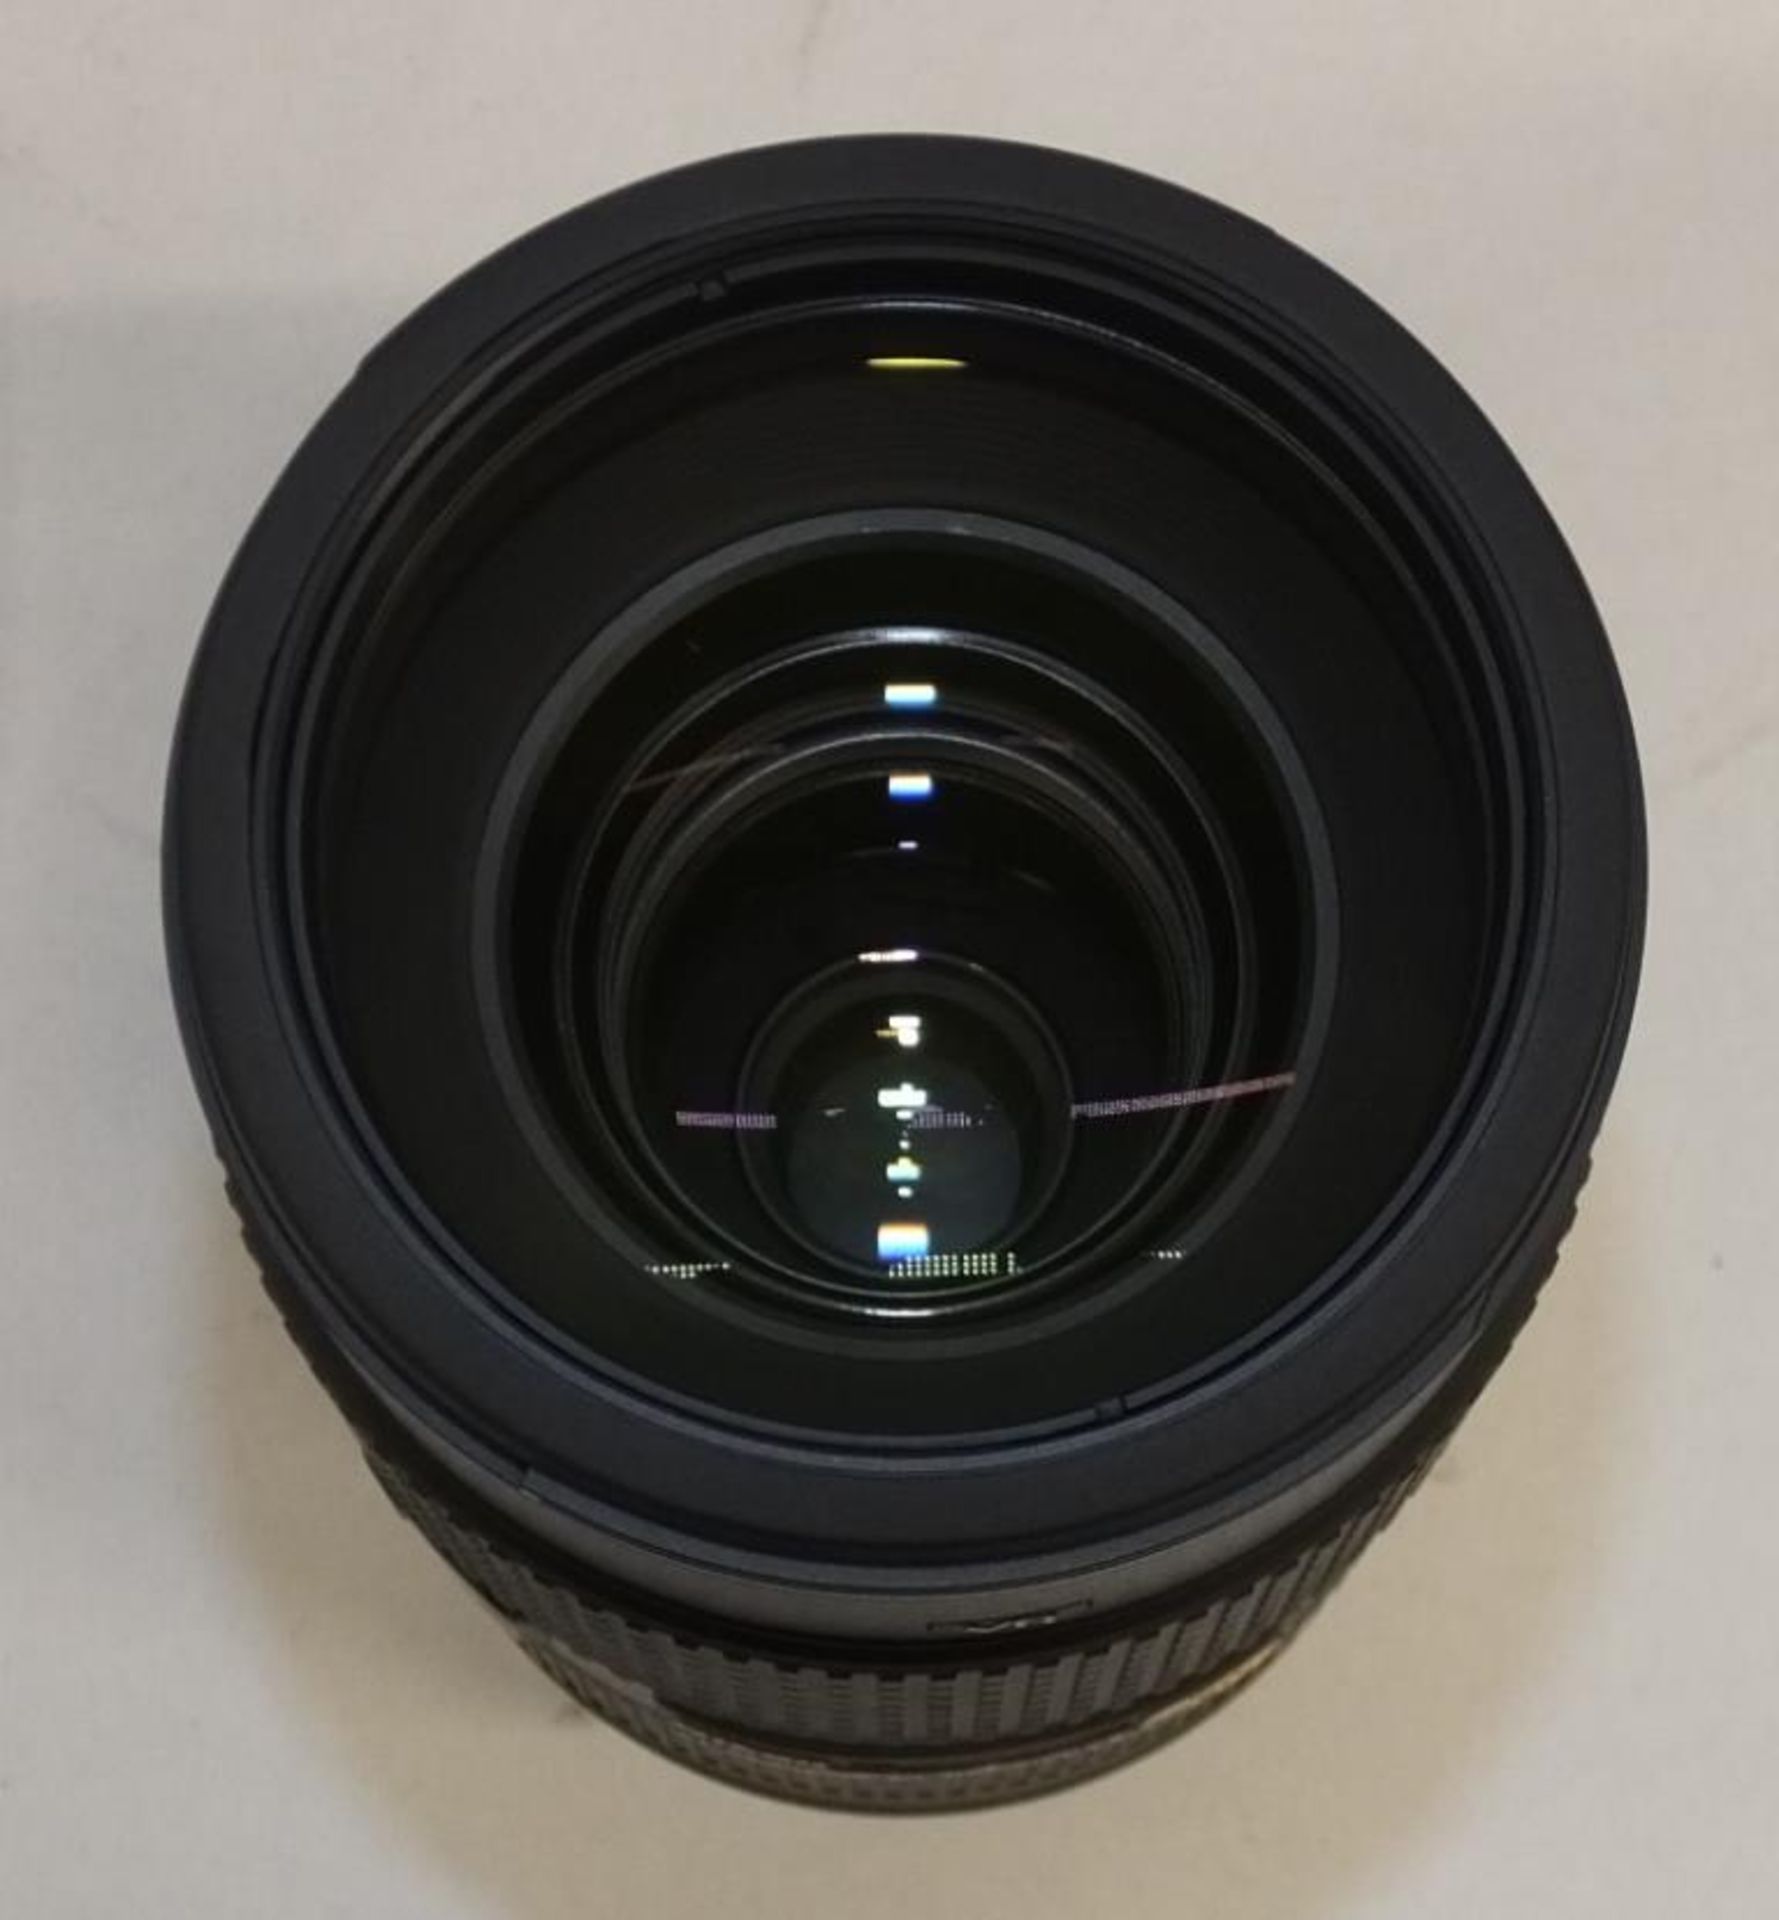 Nikon Nikkor Lens - AF-S Nikkor 80-400mm f/4.5-5.6G ED VR with Nikon HB-65 Lens Hood & CL-M2 case - Image 3 of 5